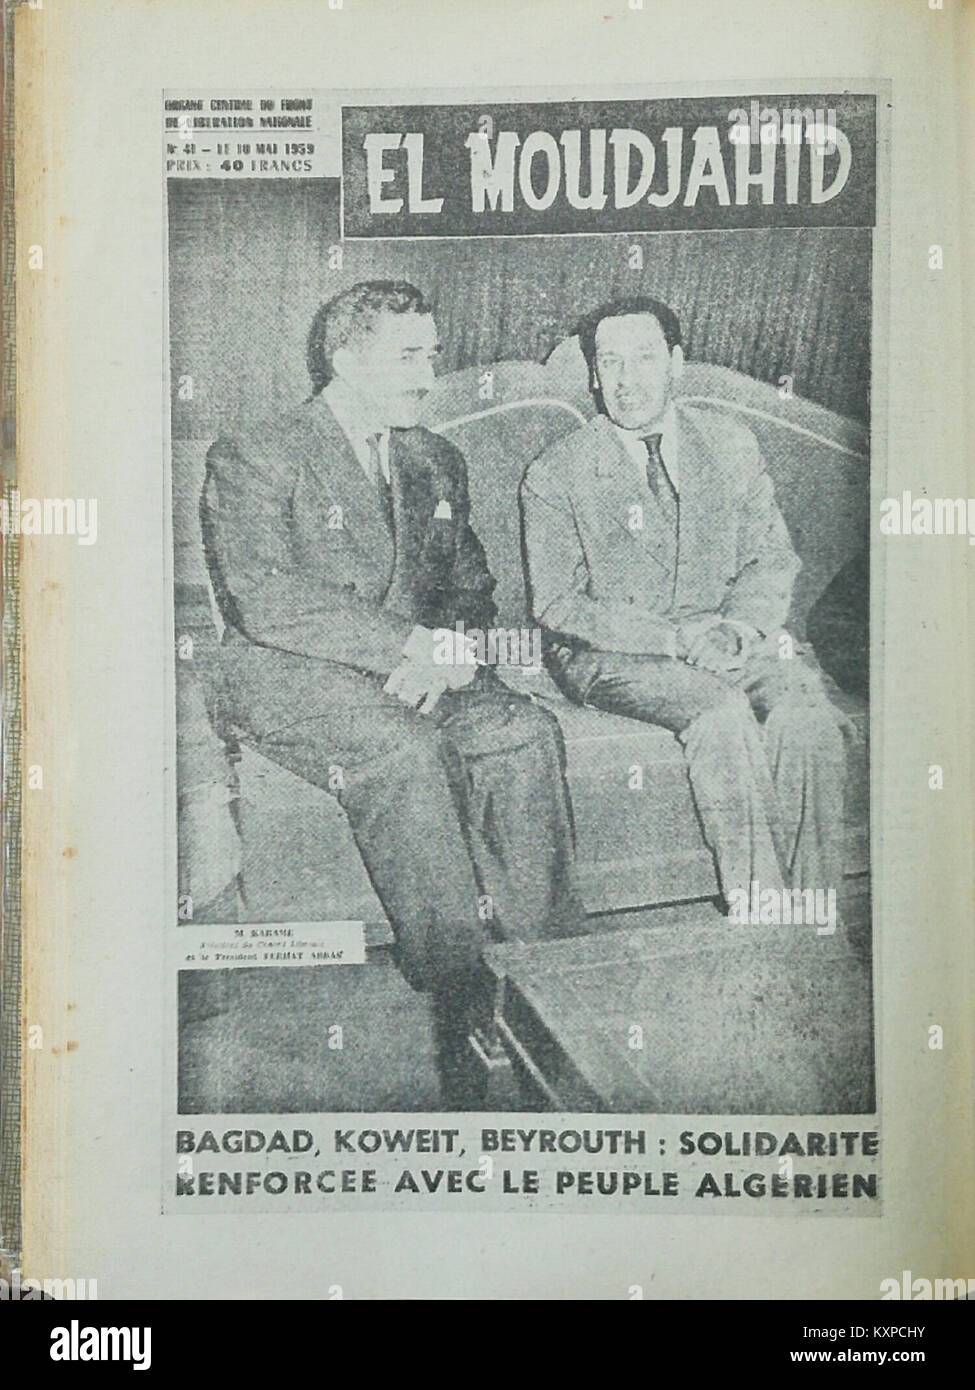 El Moudjahid Fr (41) - 10-05-1959 - Bagdad, Koweit, Beyrouth, Solidarité renforcée avec le peuple algérien Stock Photo